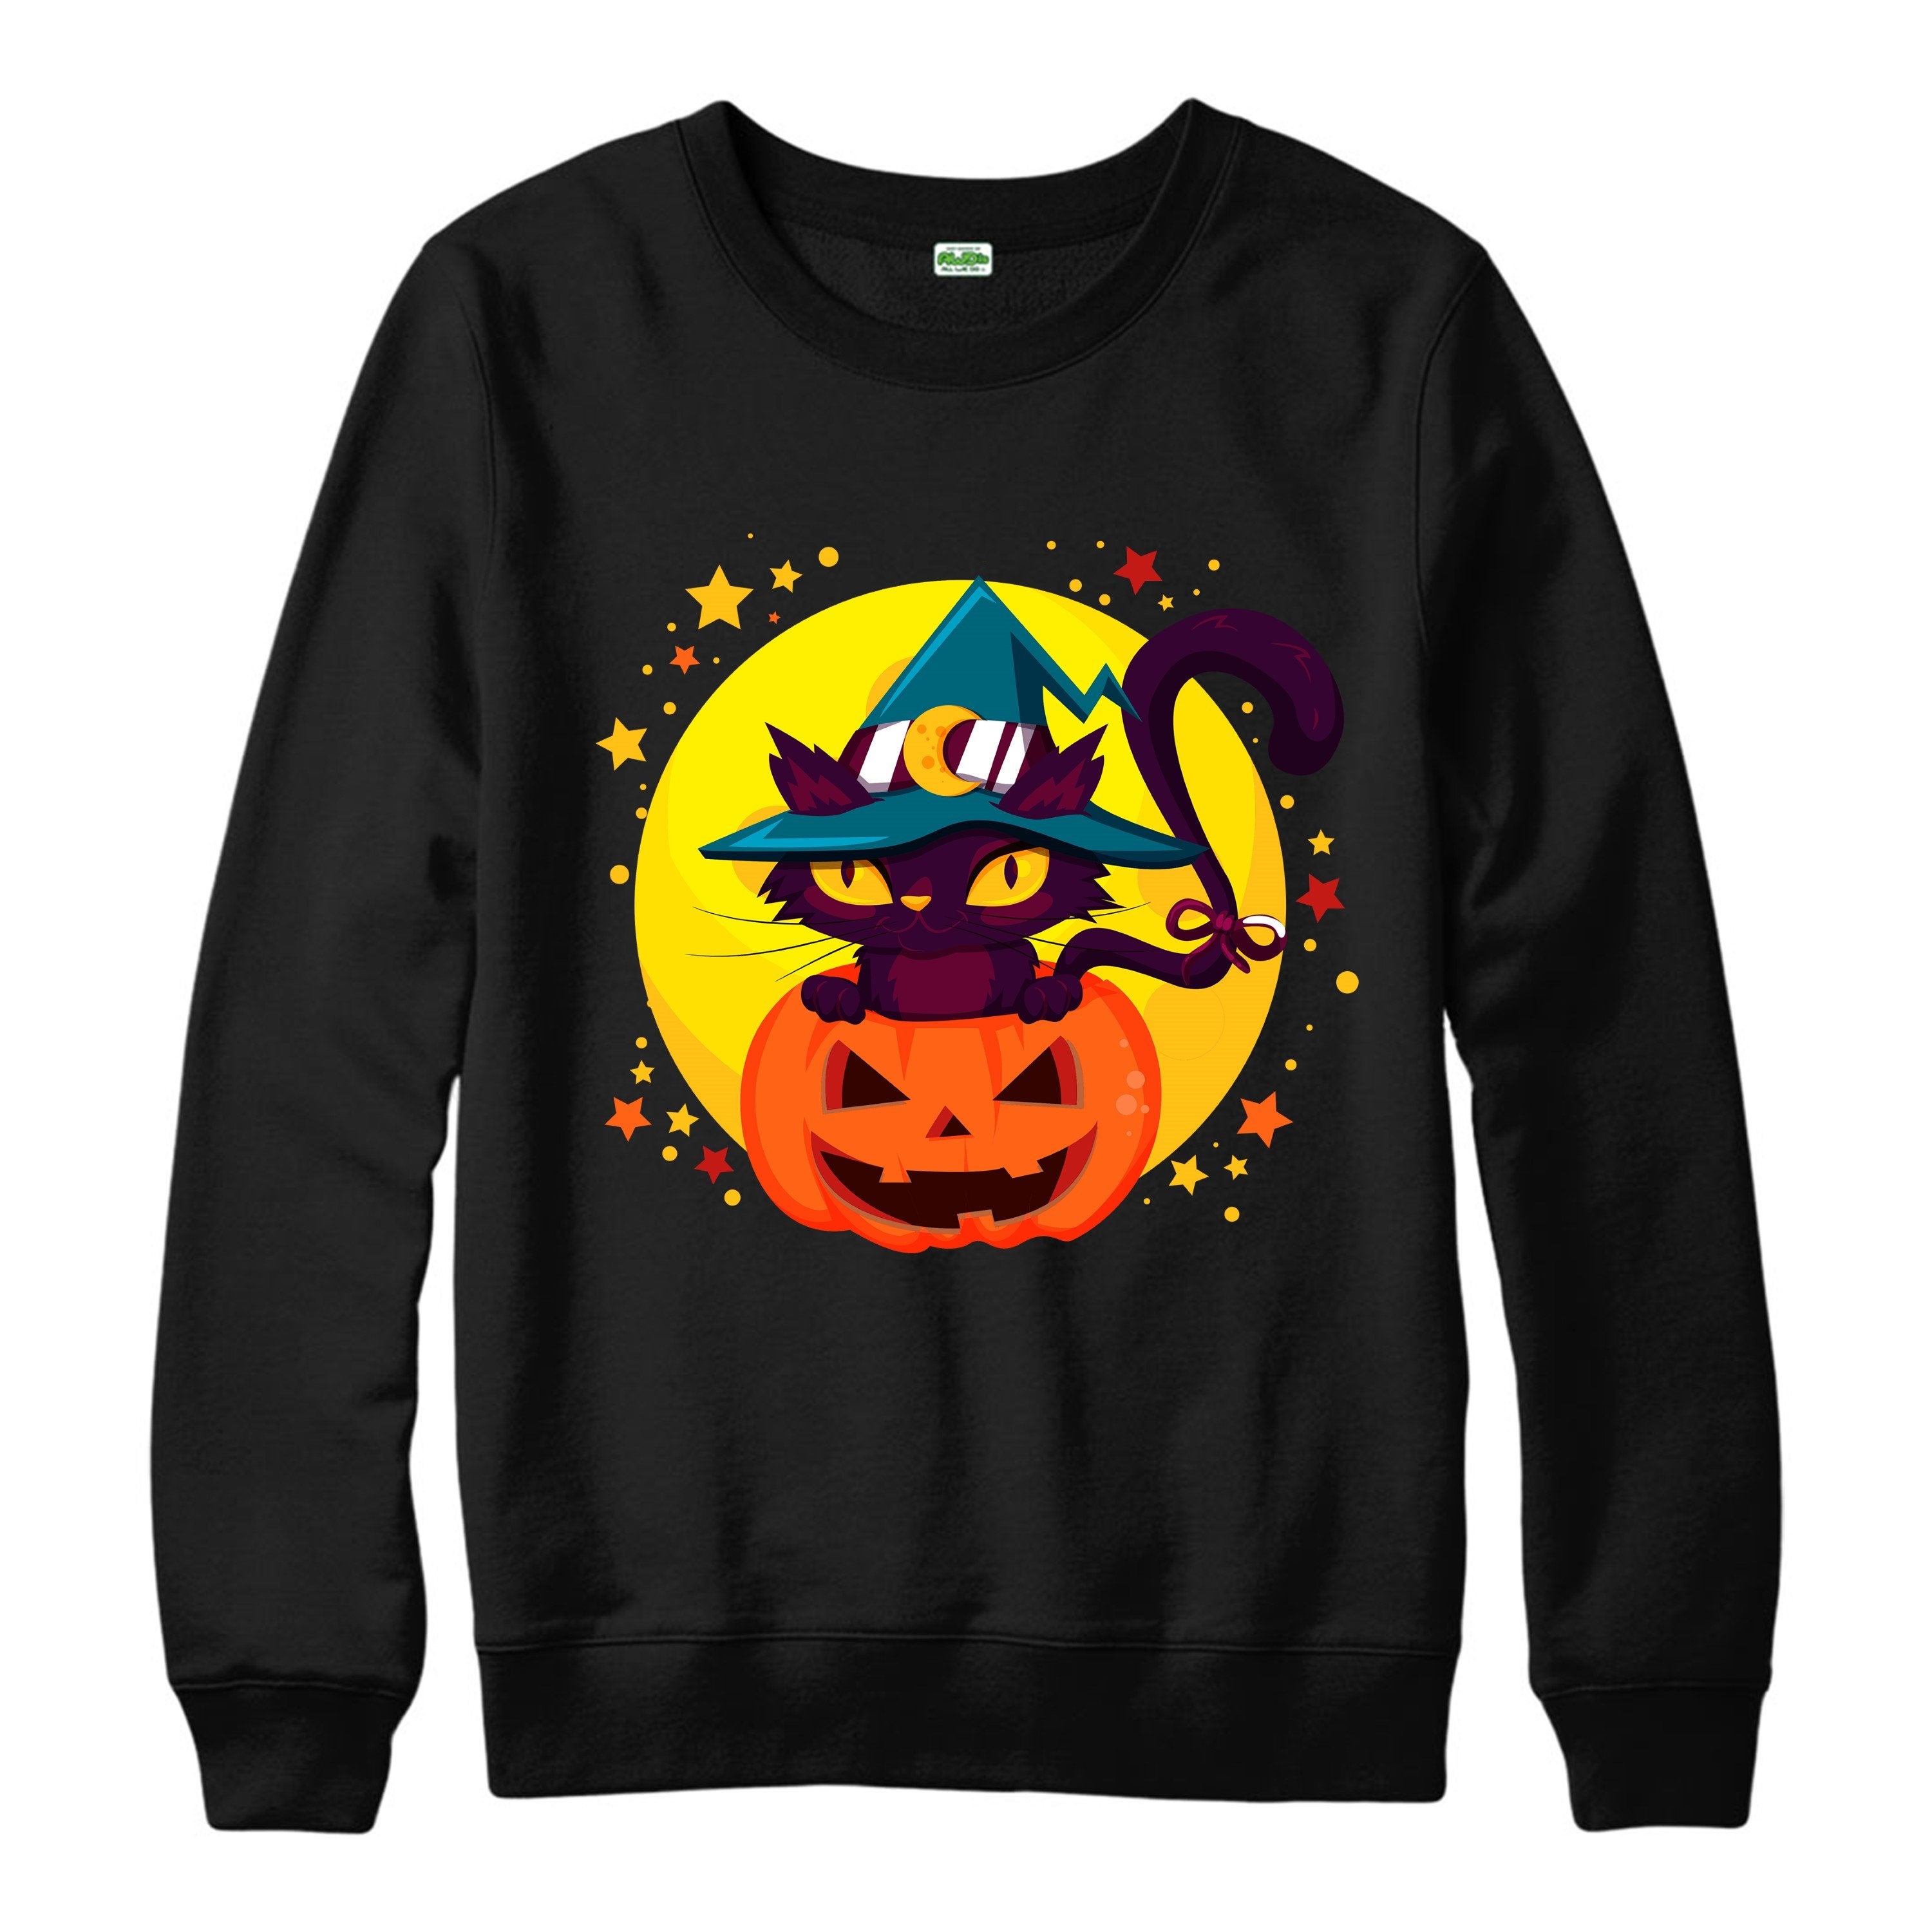 Cat Witch Pumpkin Jumper, Spooky Horror Halloween Inspired Design Jumper Top Shirts